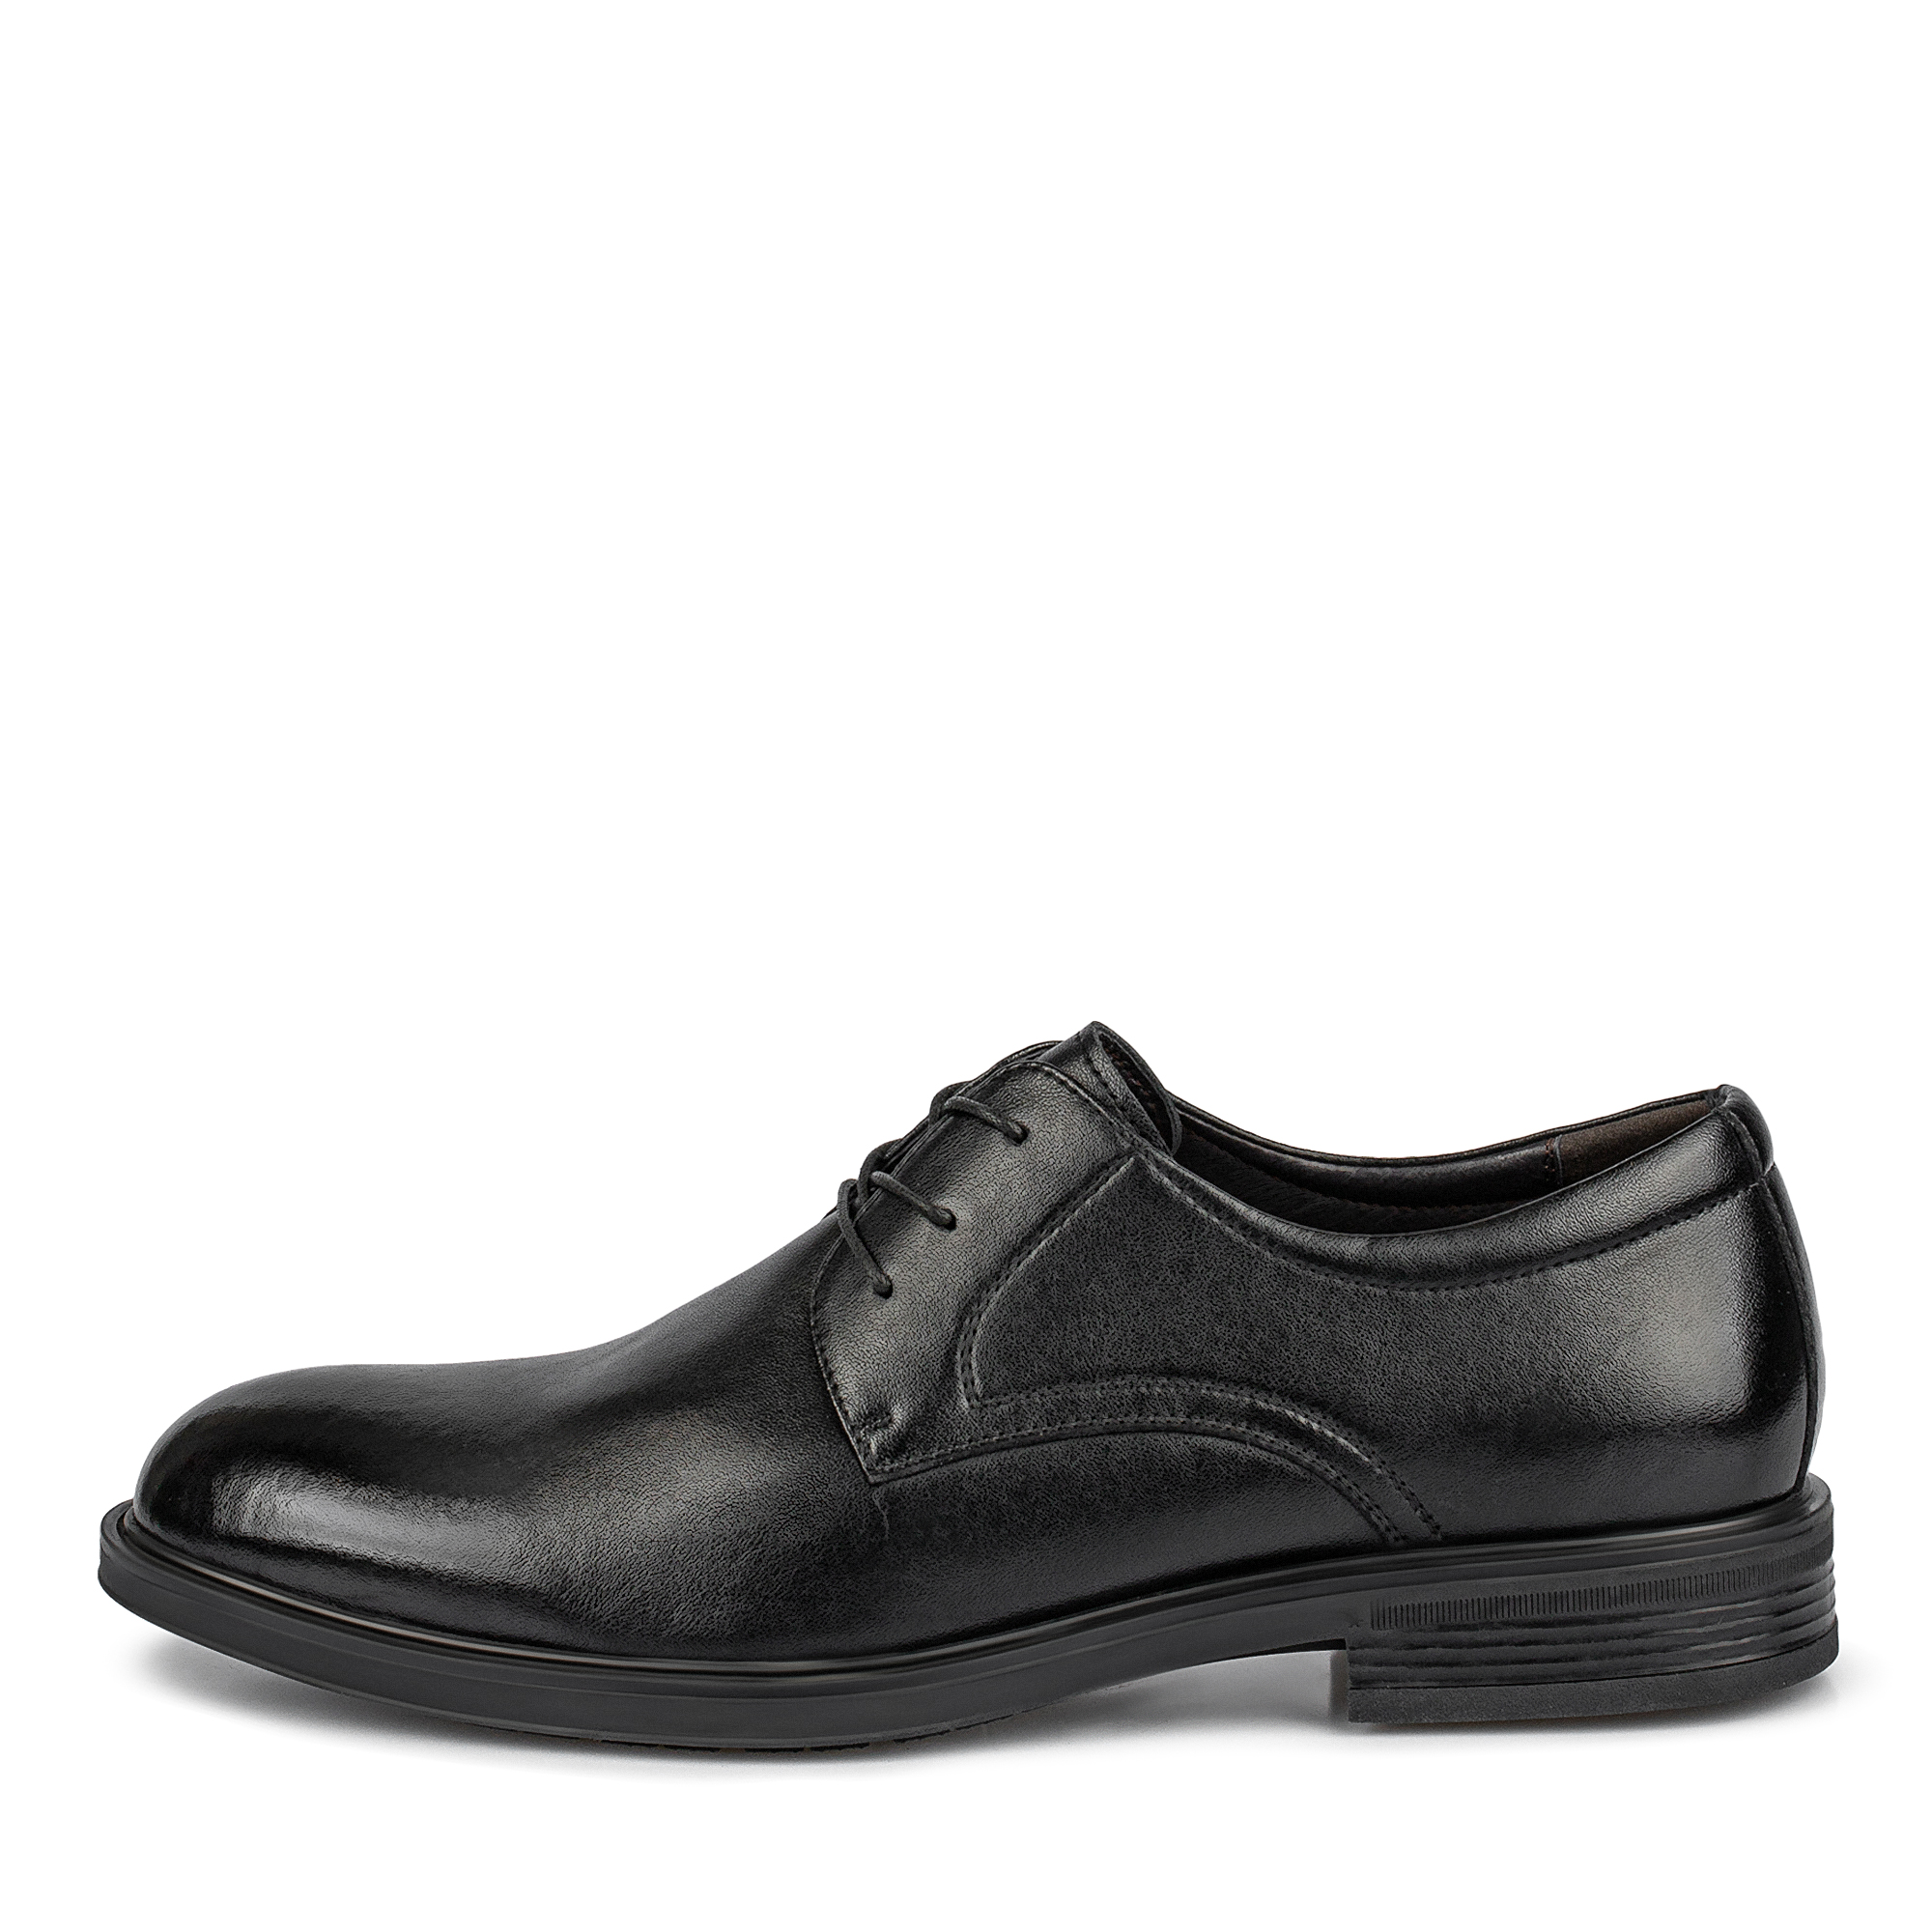 Туфли/полуботинки Thomas Munz 104-647A-1602, цвет черный, размер 42 - фото 1